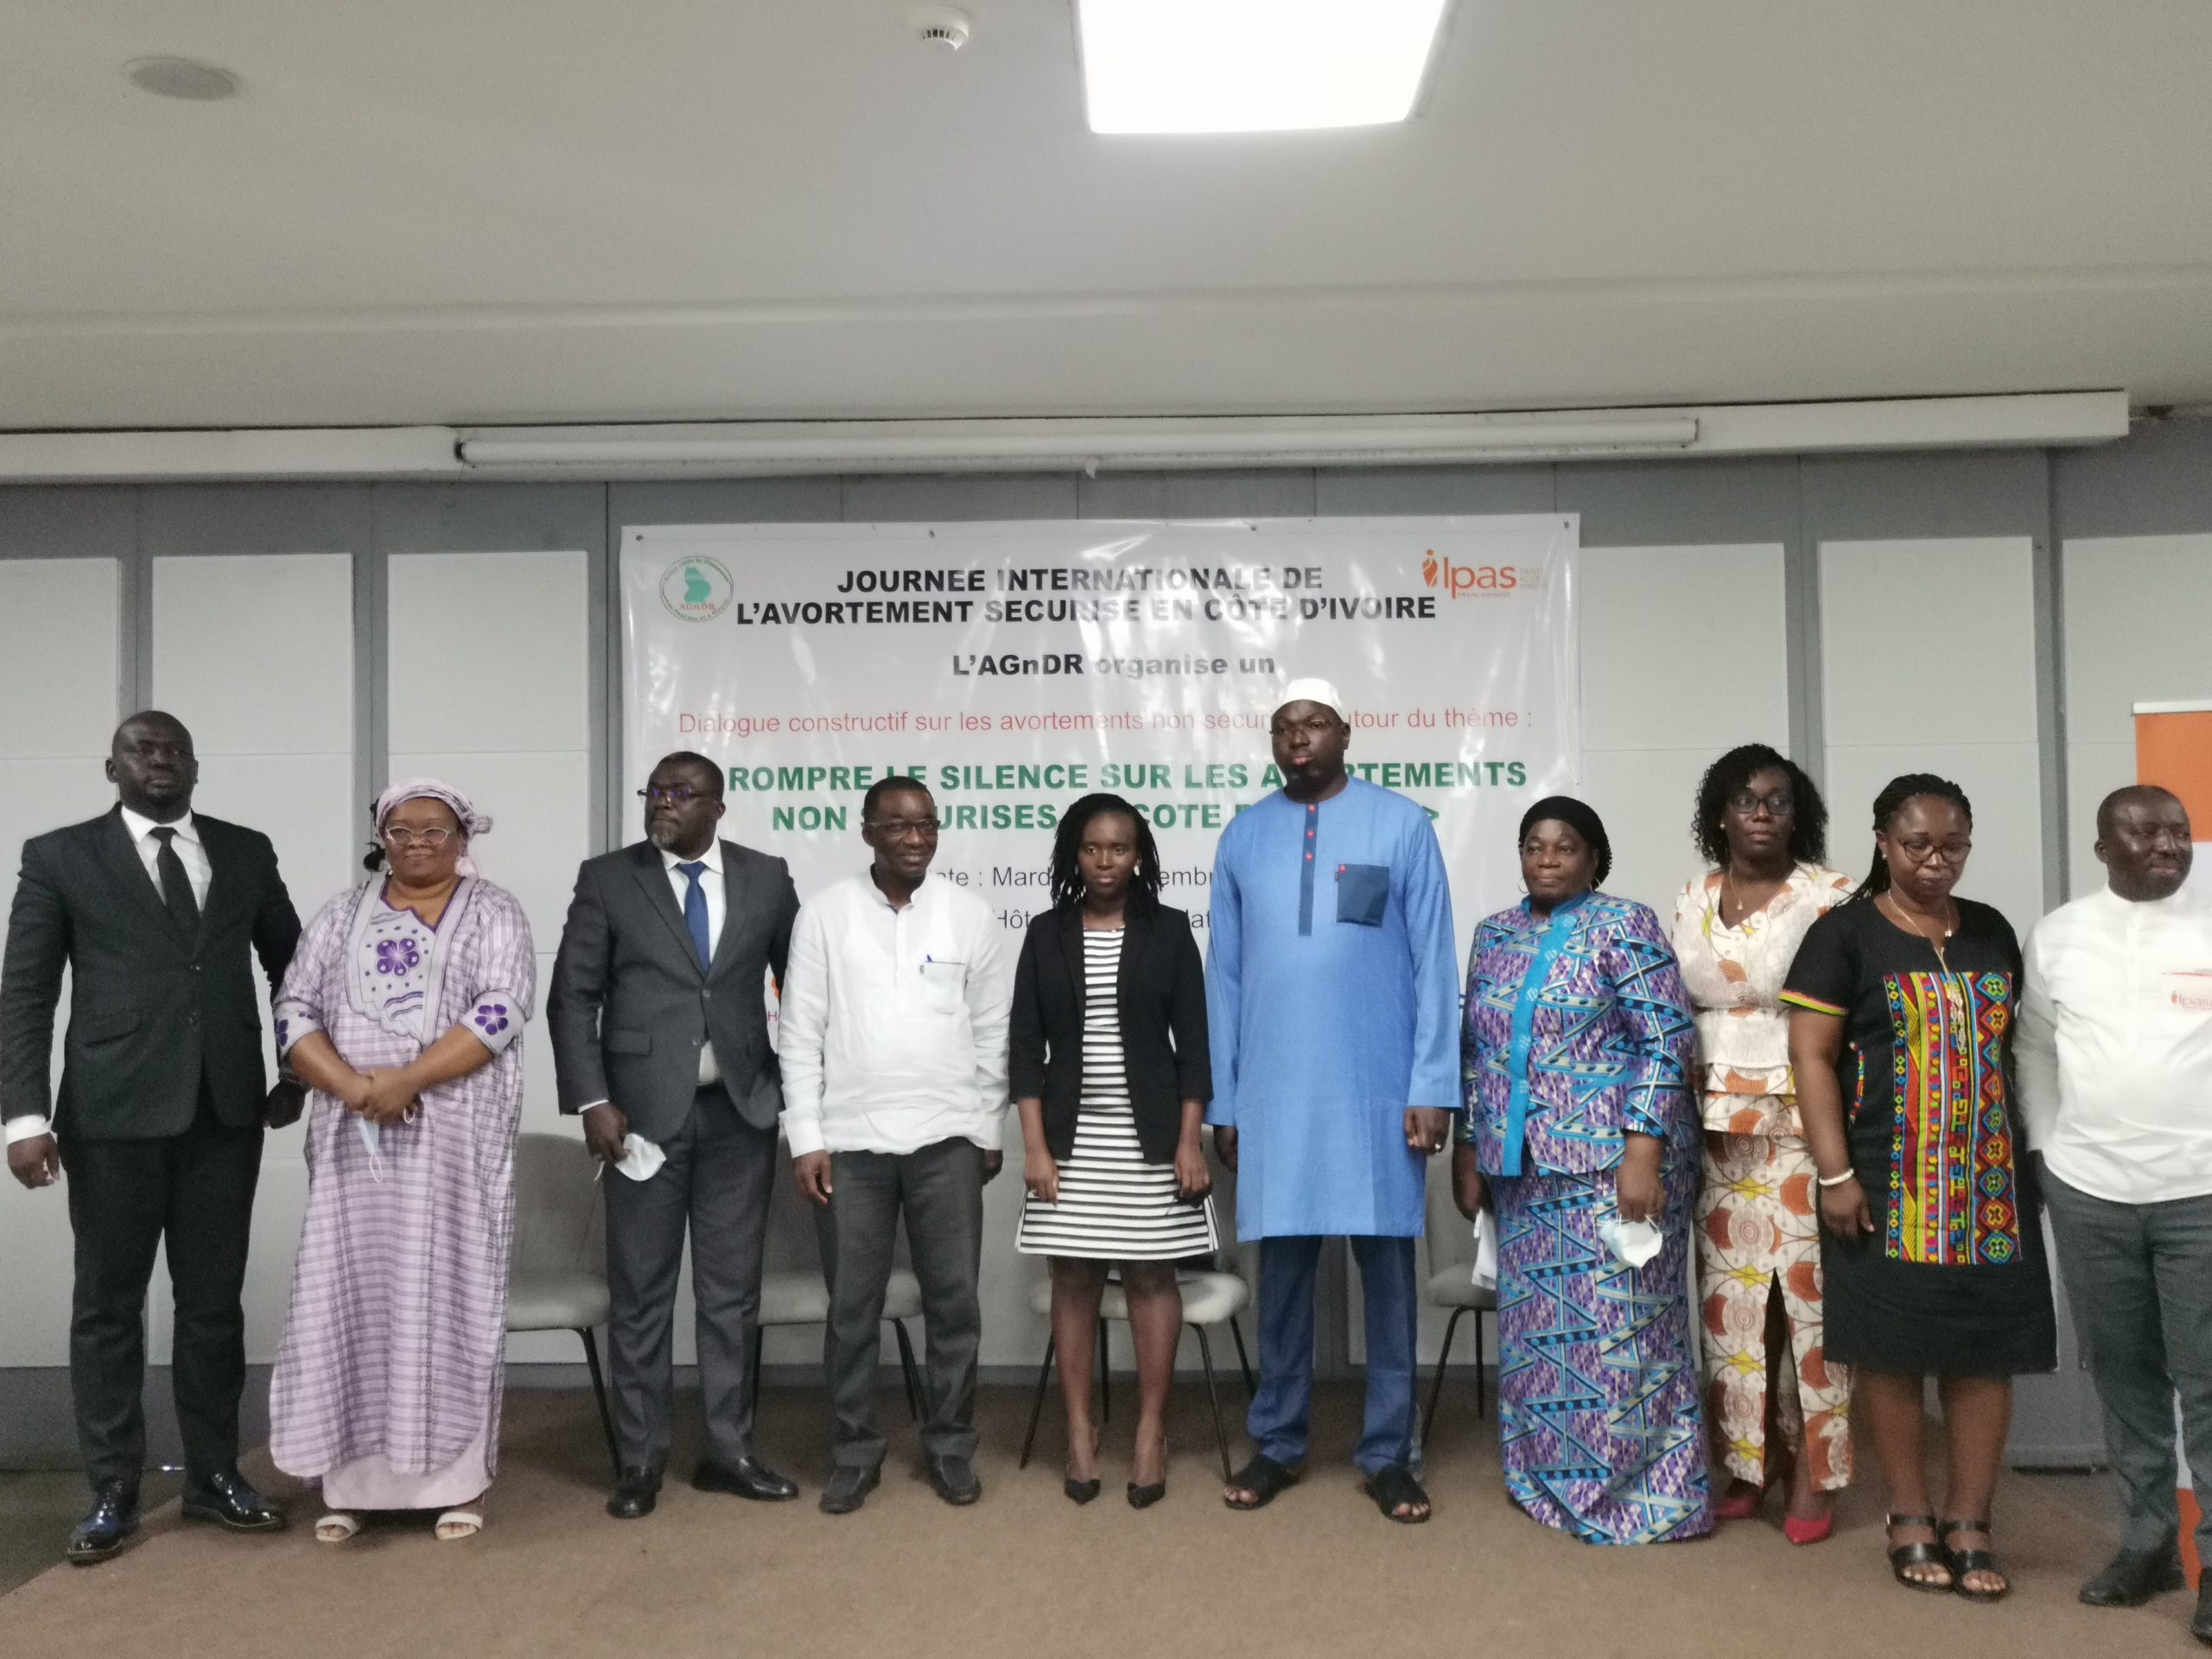 Célébration de la Journée Internationale de l’Avortement Sécurisé en Côte d’Ivoire